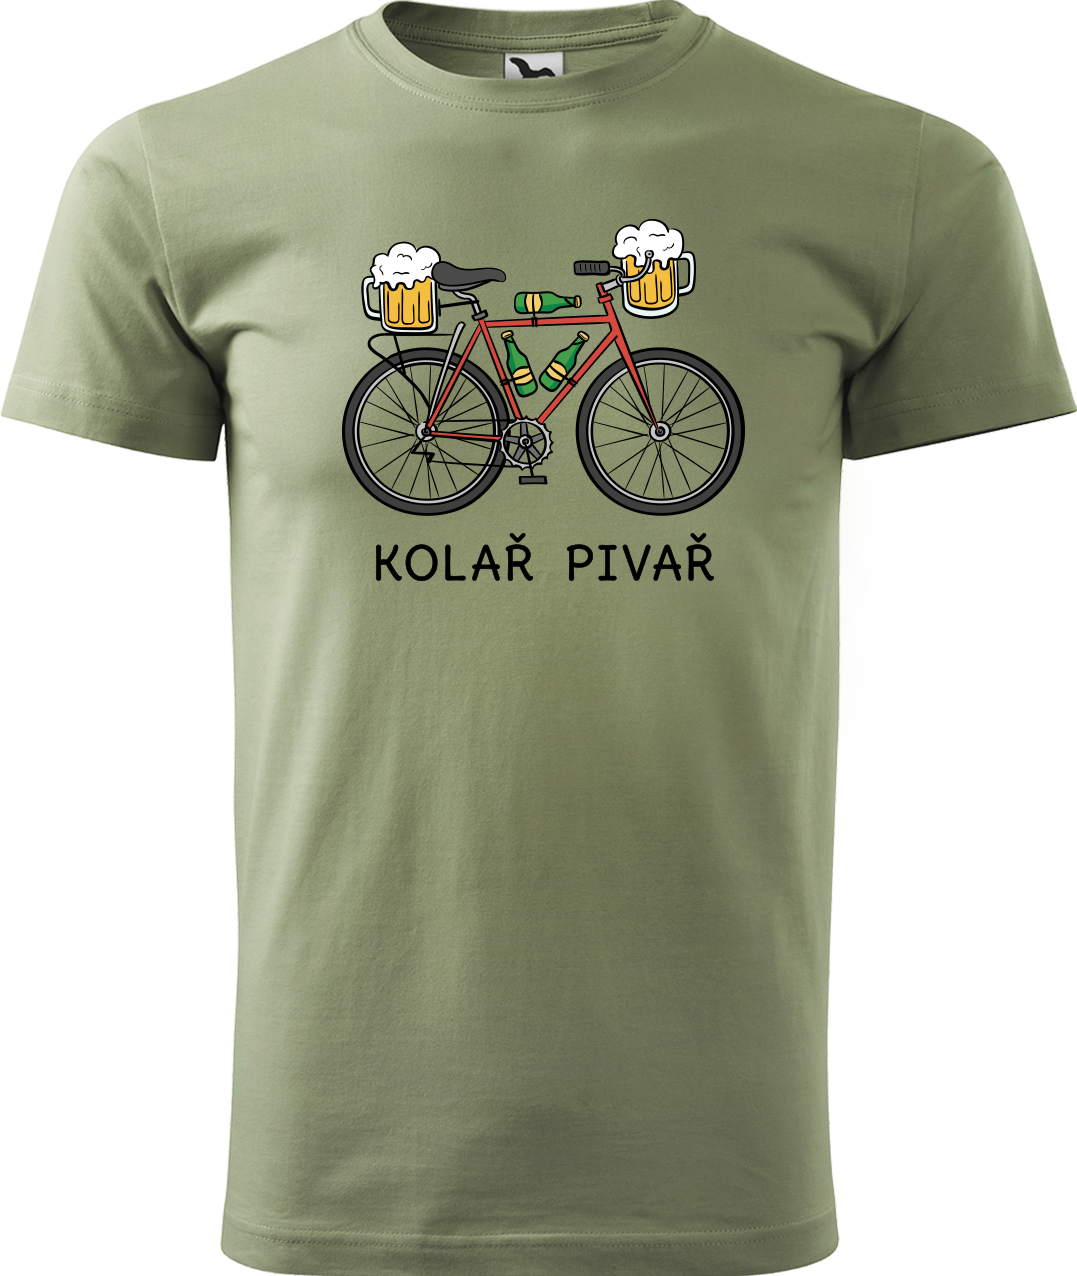 Pánské tričko s kolem - Kolař pivař Velikost: XL, Barva: Světlá khaki (28)